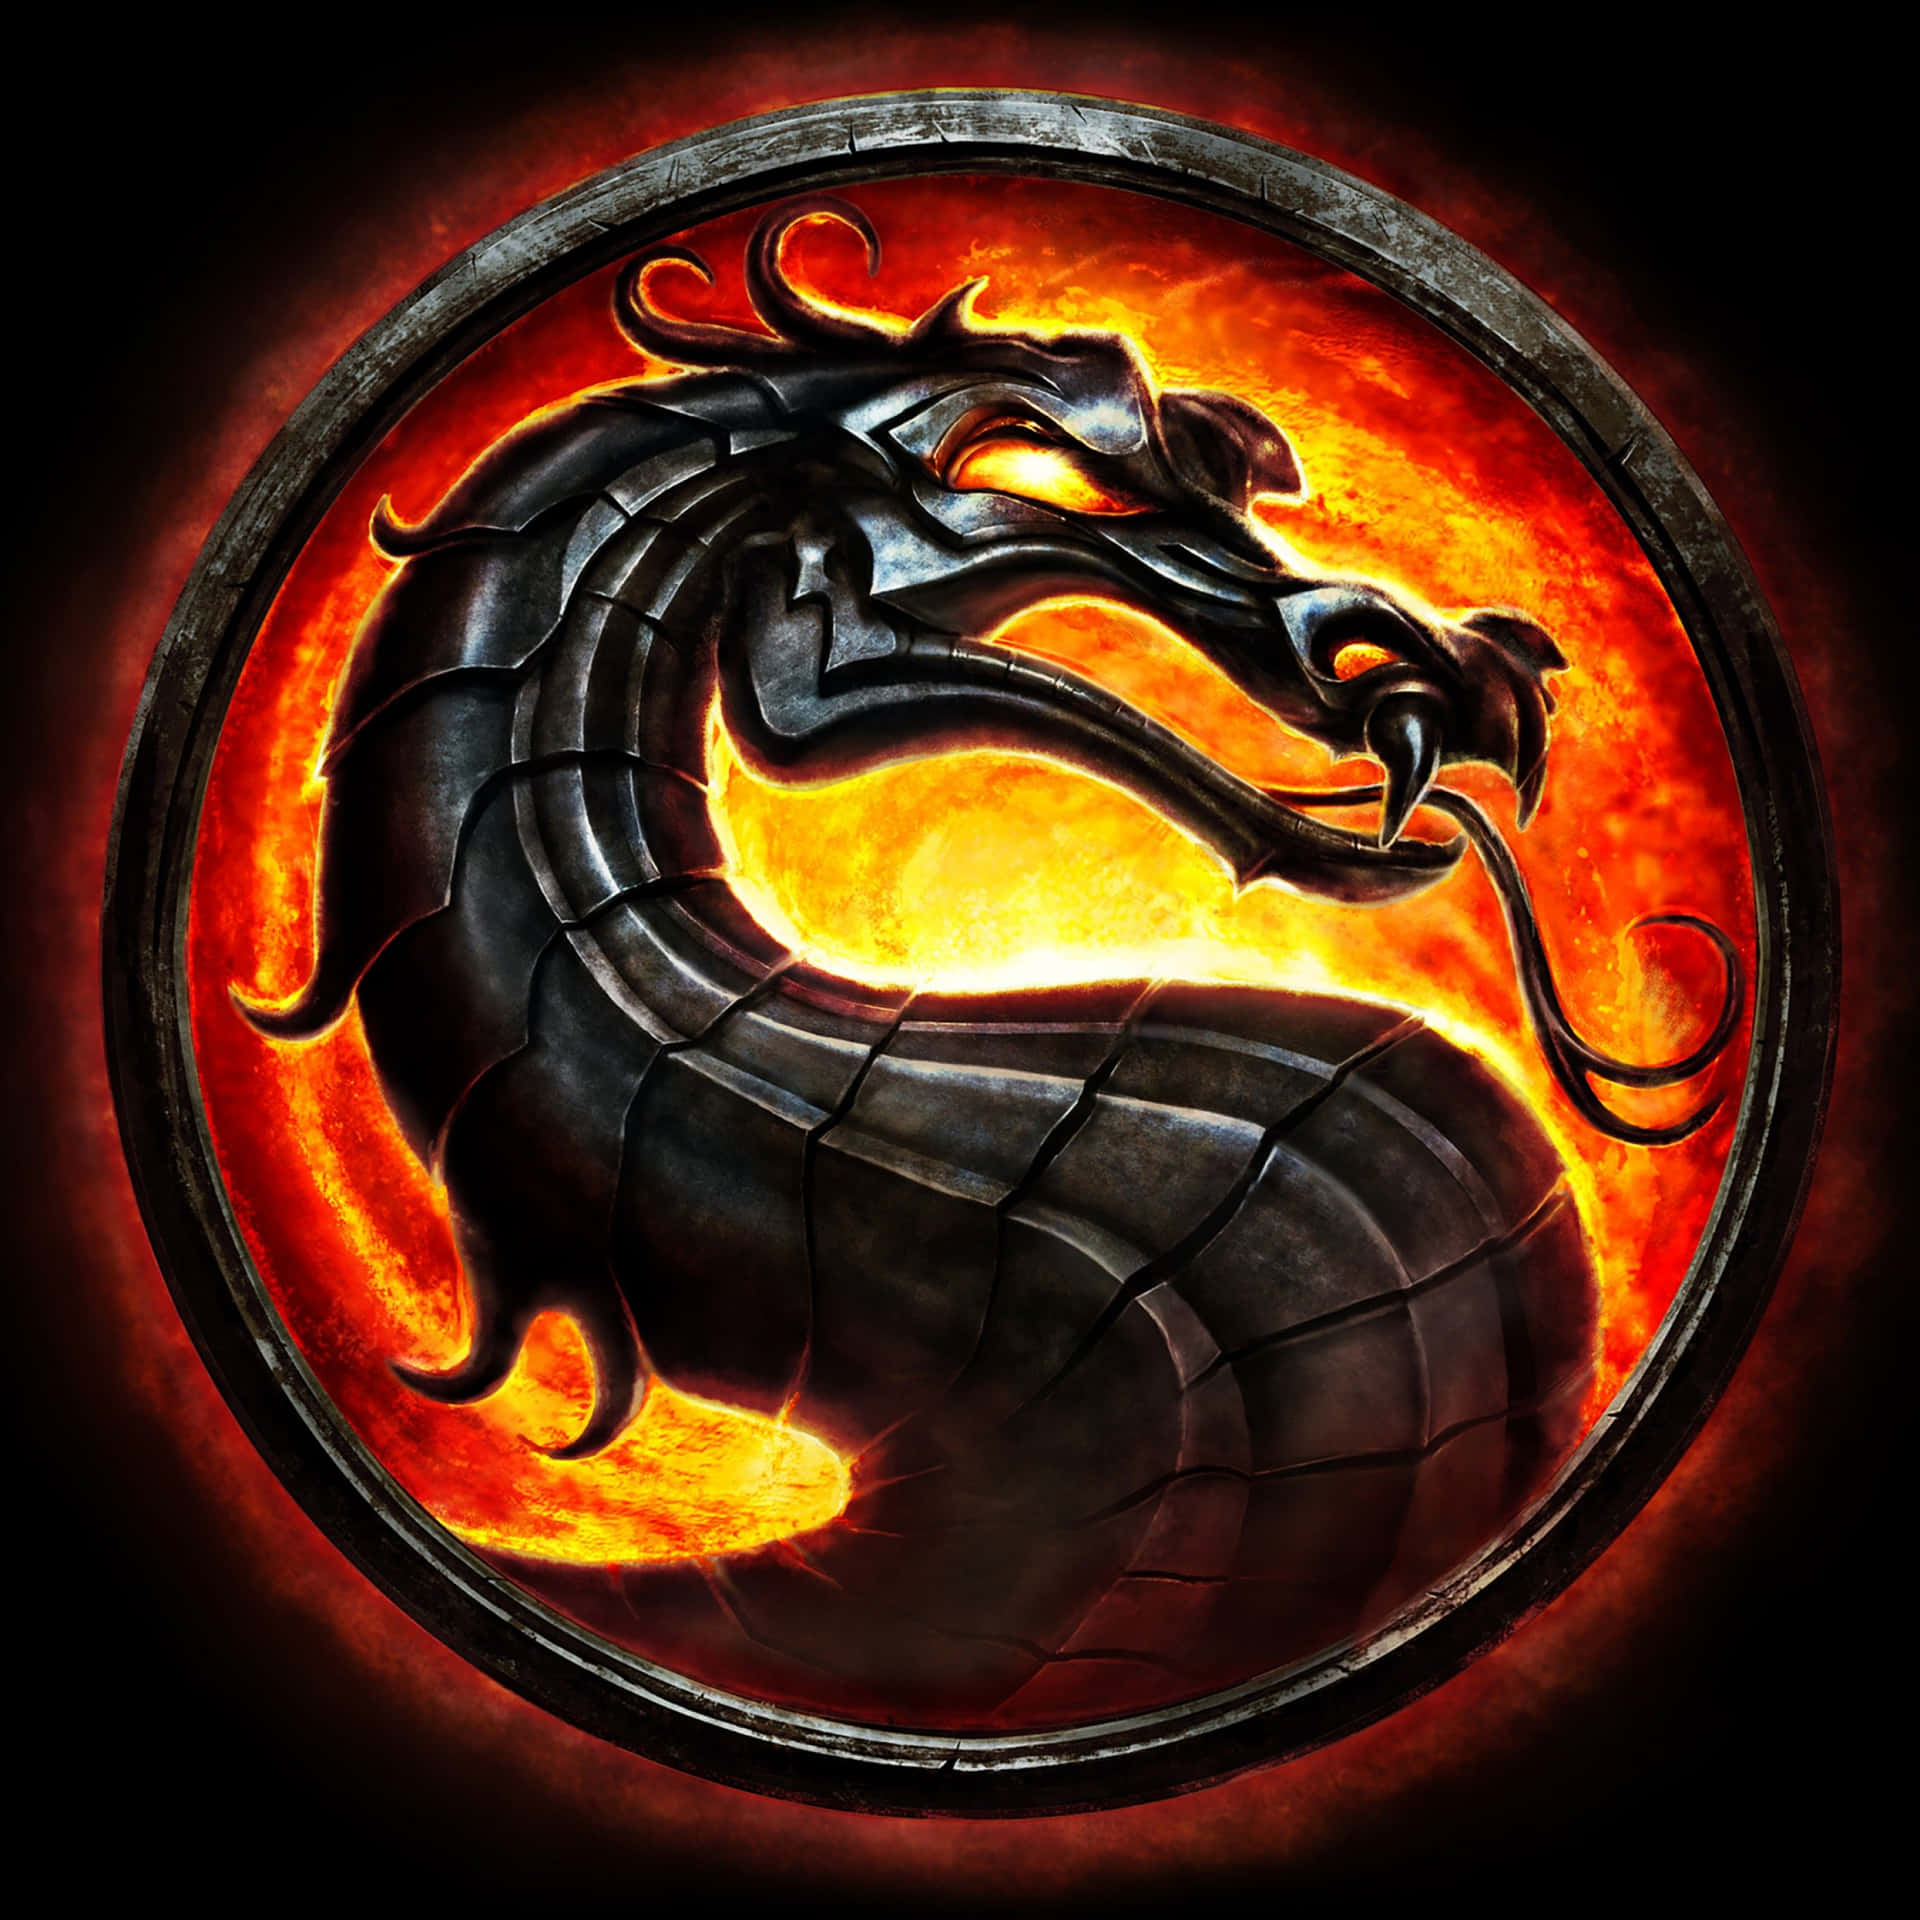 dragon logo hd